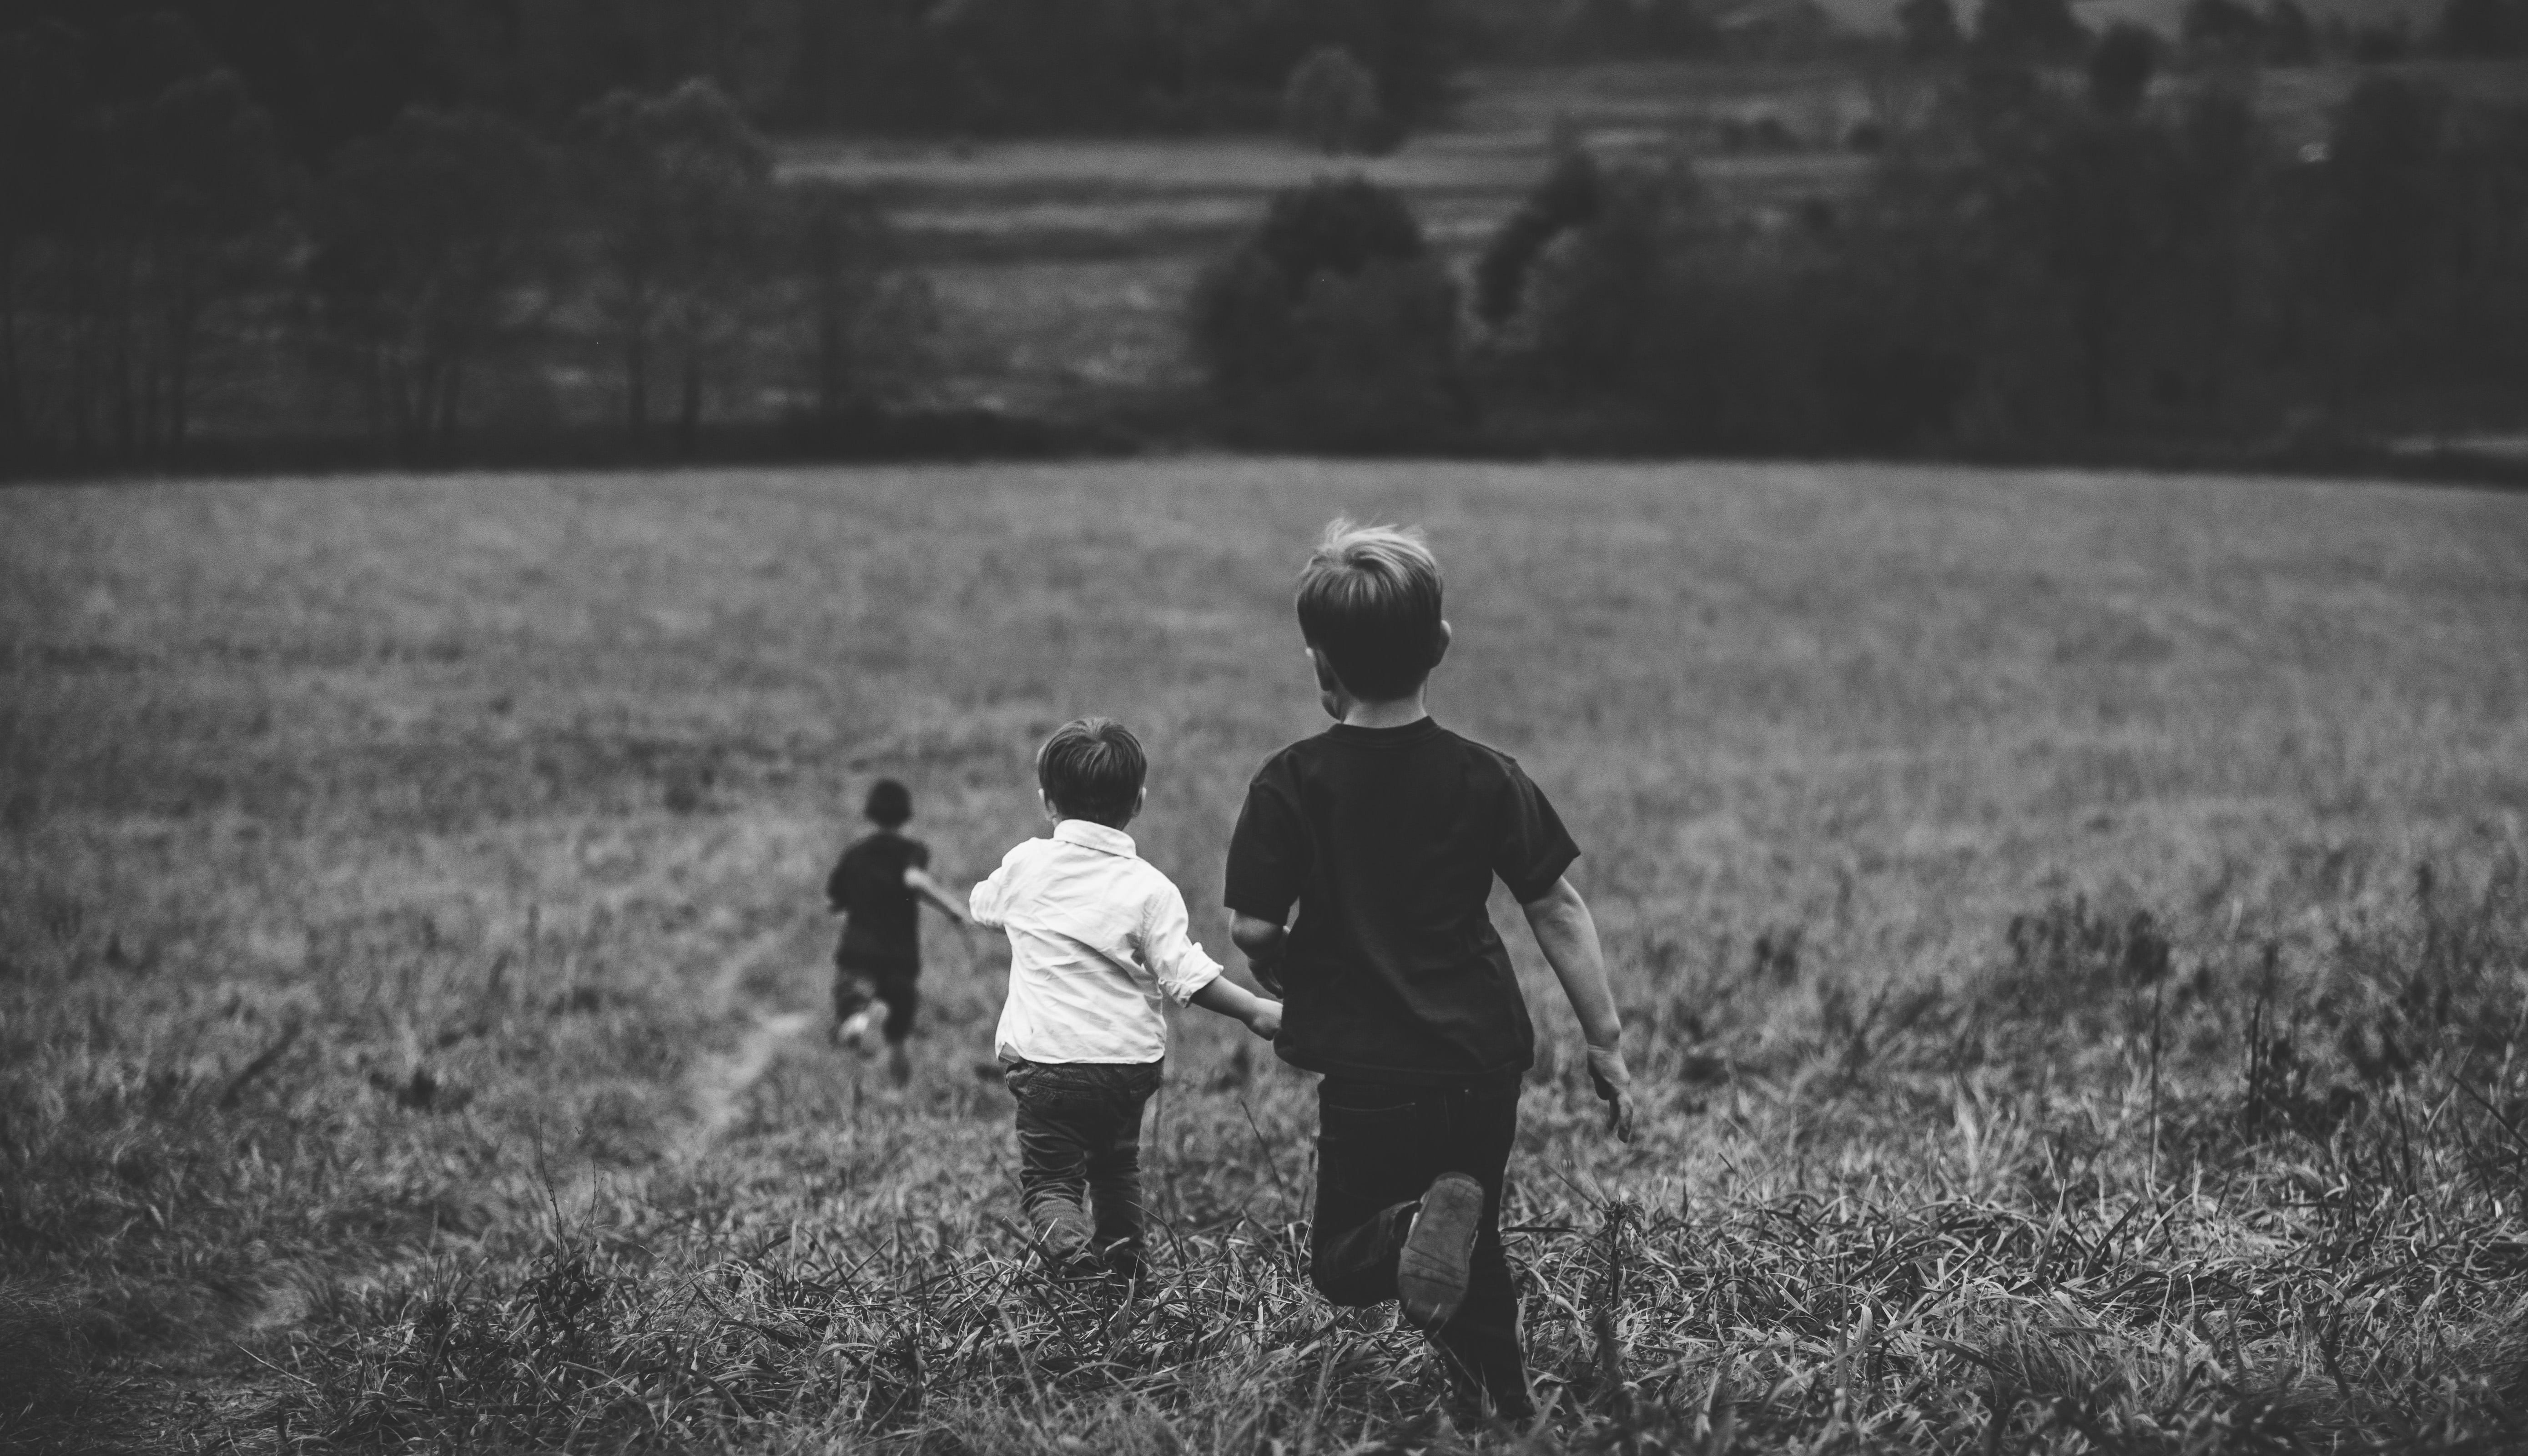 gezin met eerste, tweede en derde kind, rennen door een veld